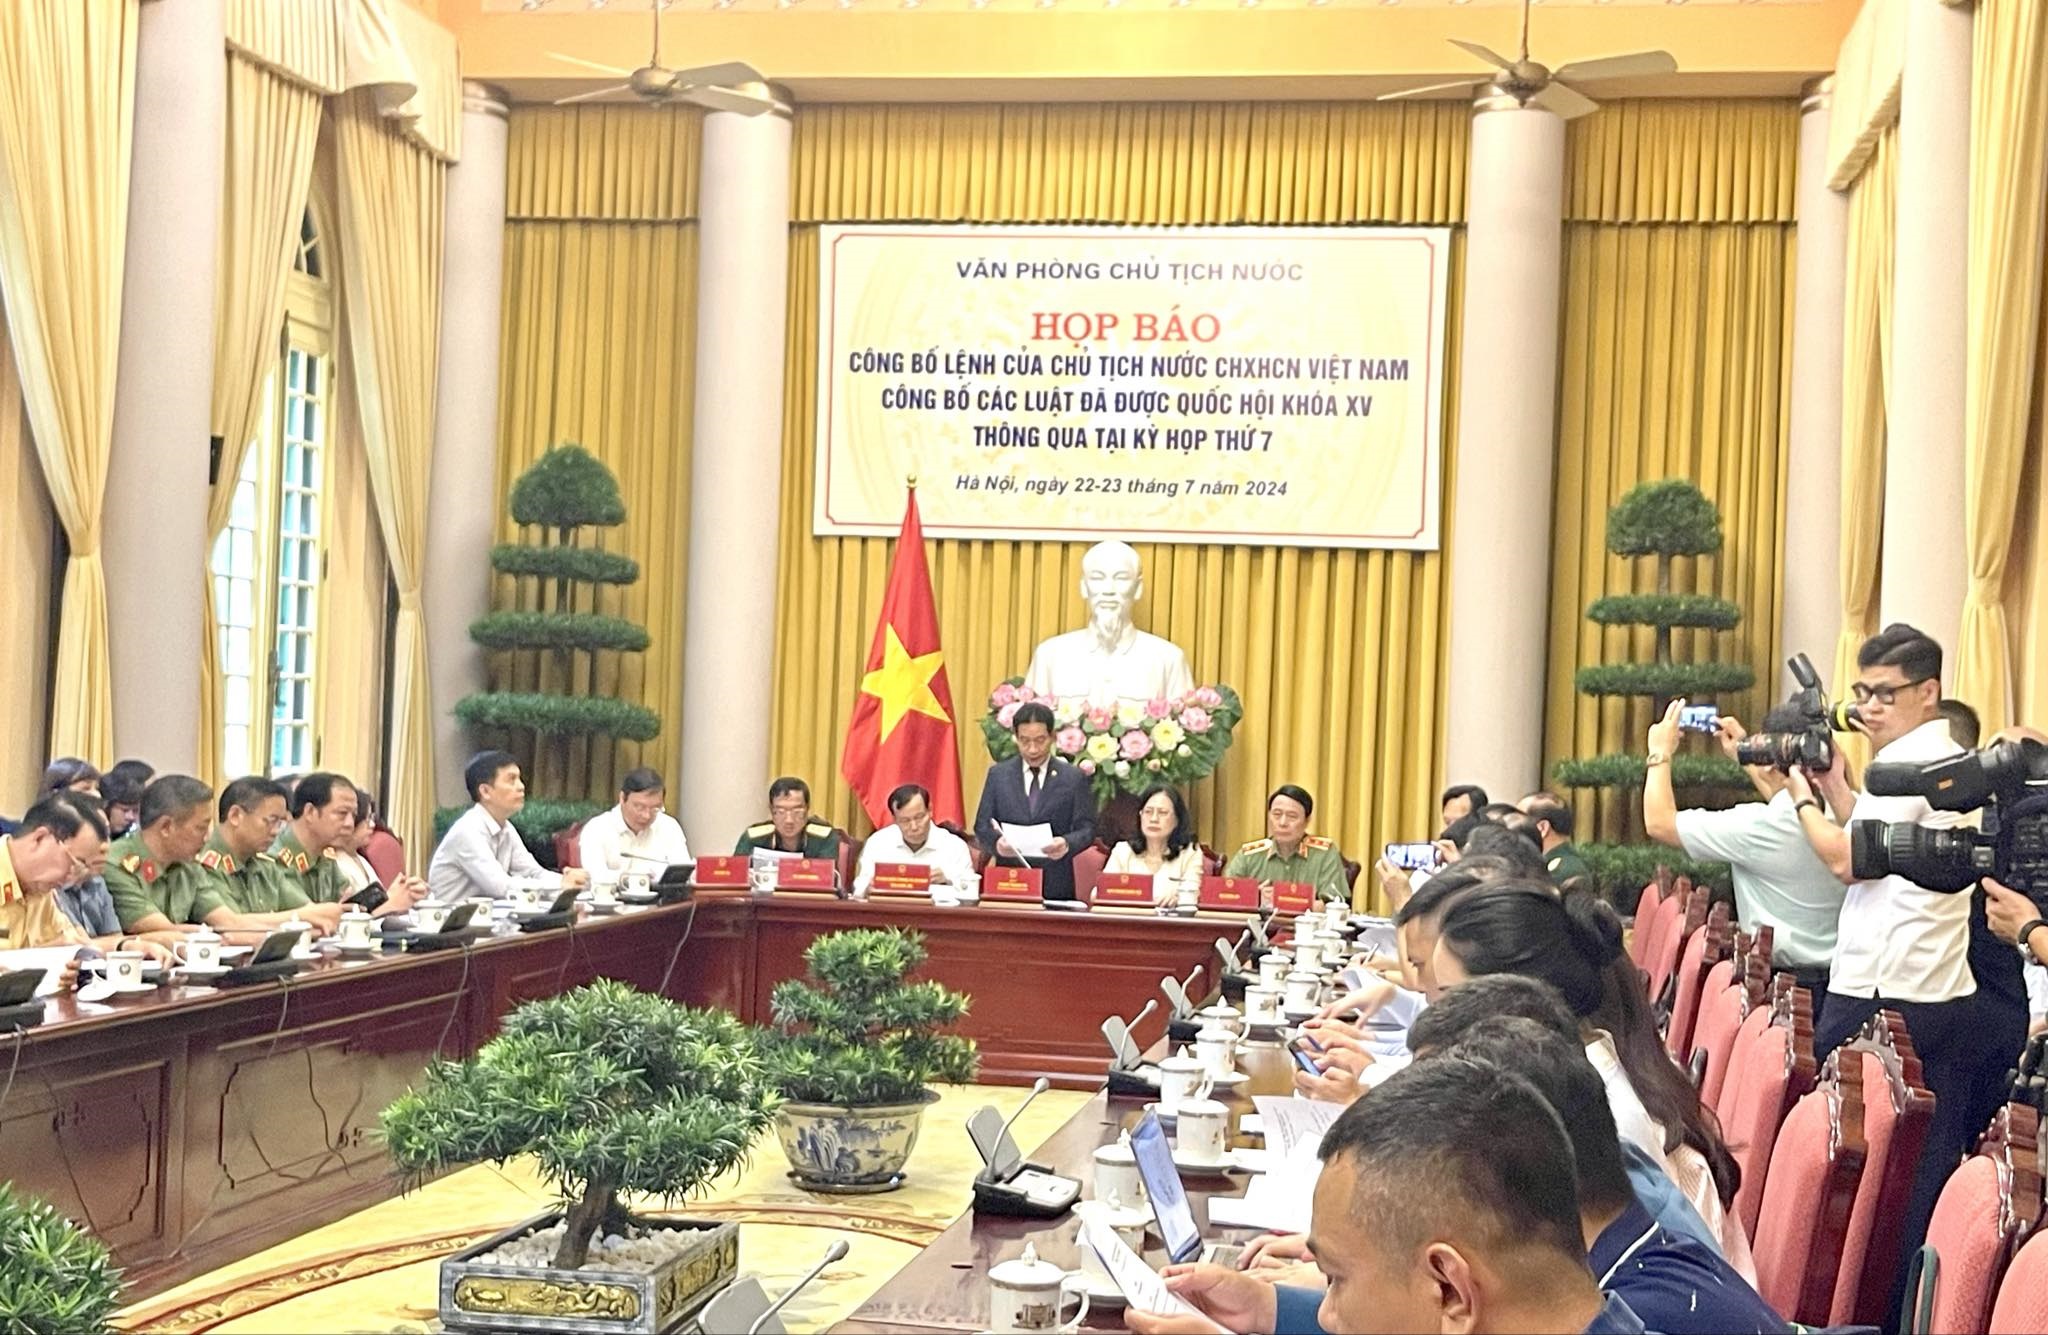 Phó Chủ nhiệm Văn phòng Chủ tịch nước Phạm Thanh Hà chủ trì họp báo